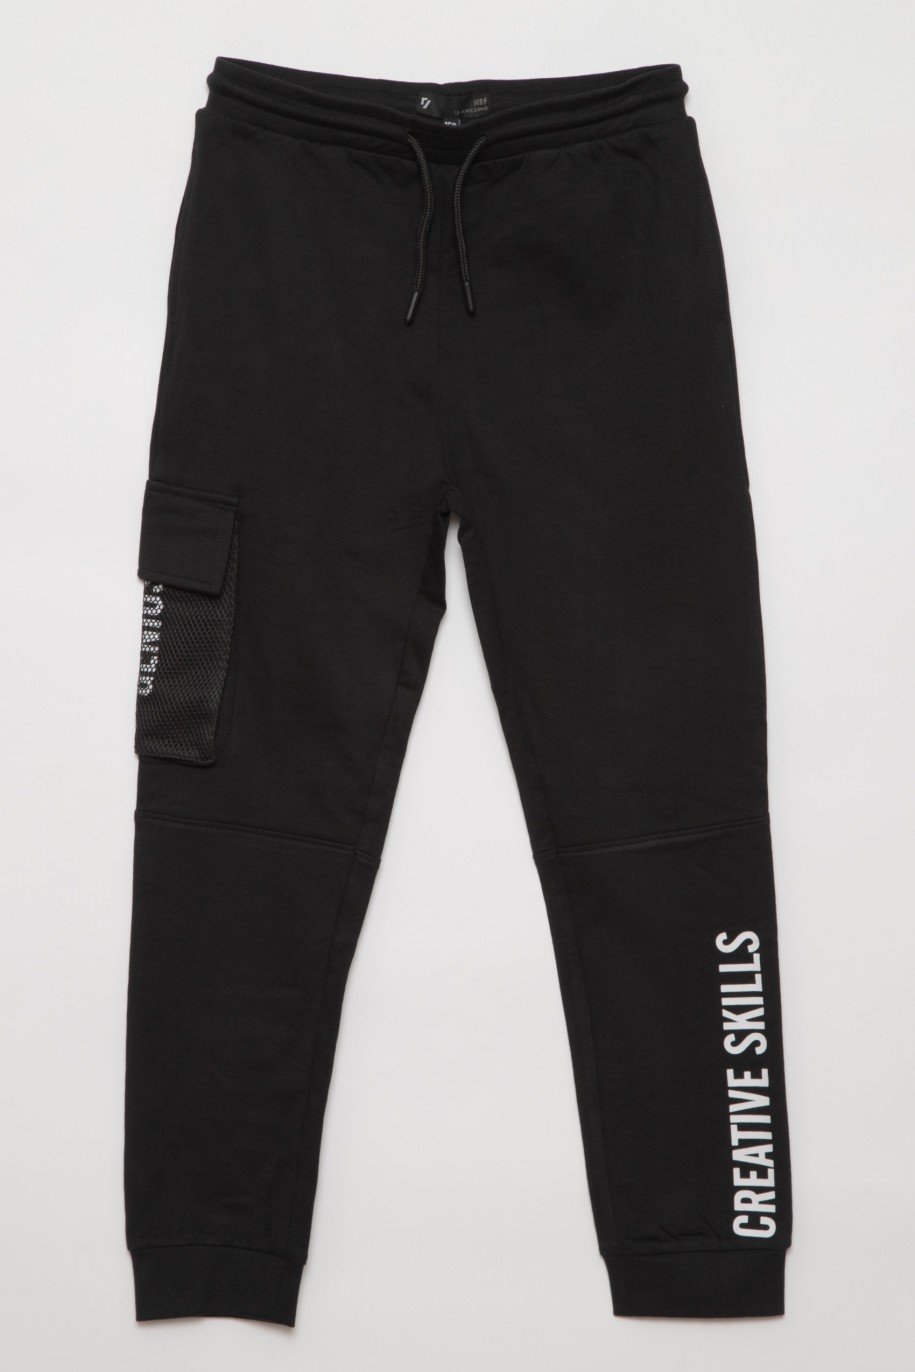 Czarne spodnie dresowe dla chłopaka CREATIVE SKILLS - 31686